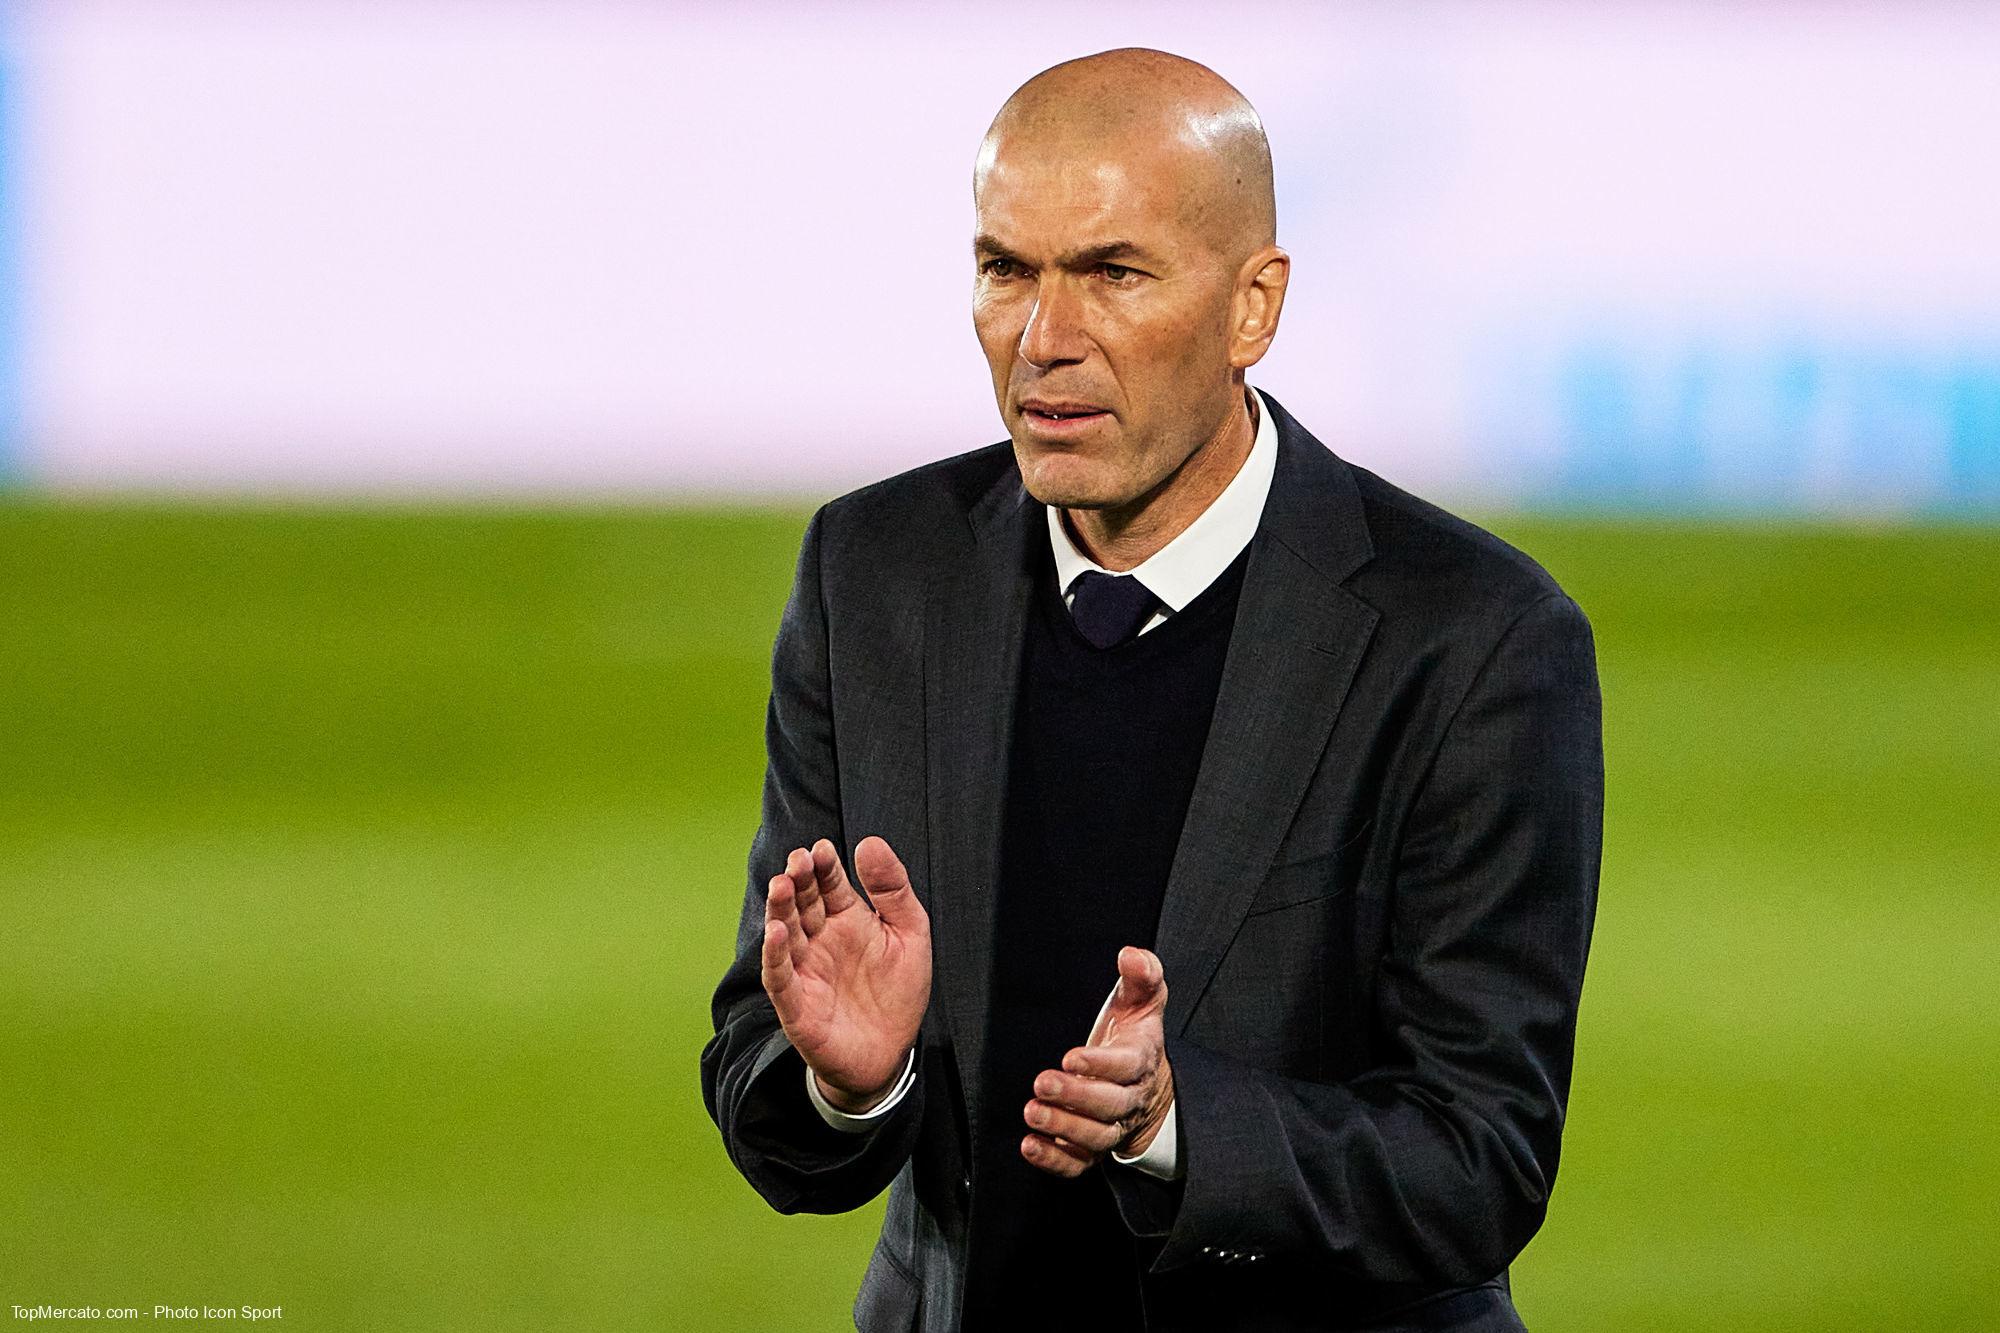 La raison du refus de l’offre du PSG par Zidane dévoilée (L’Equipe)